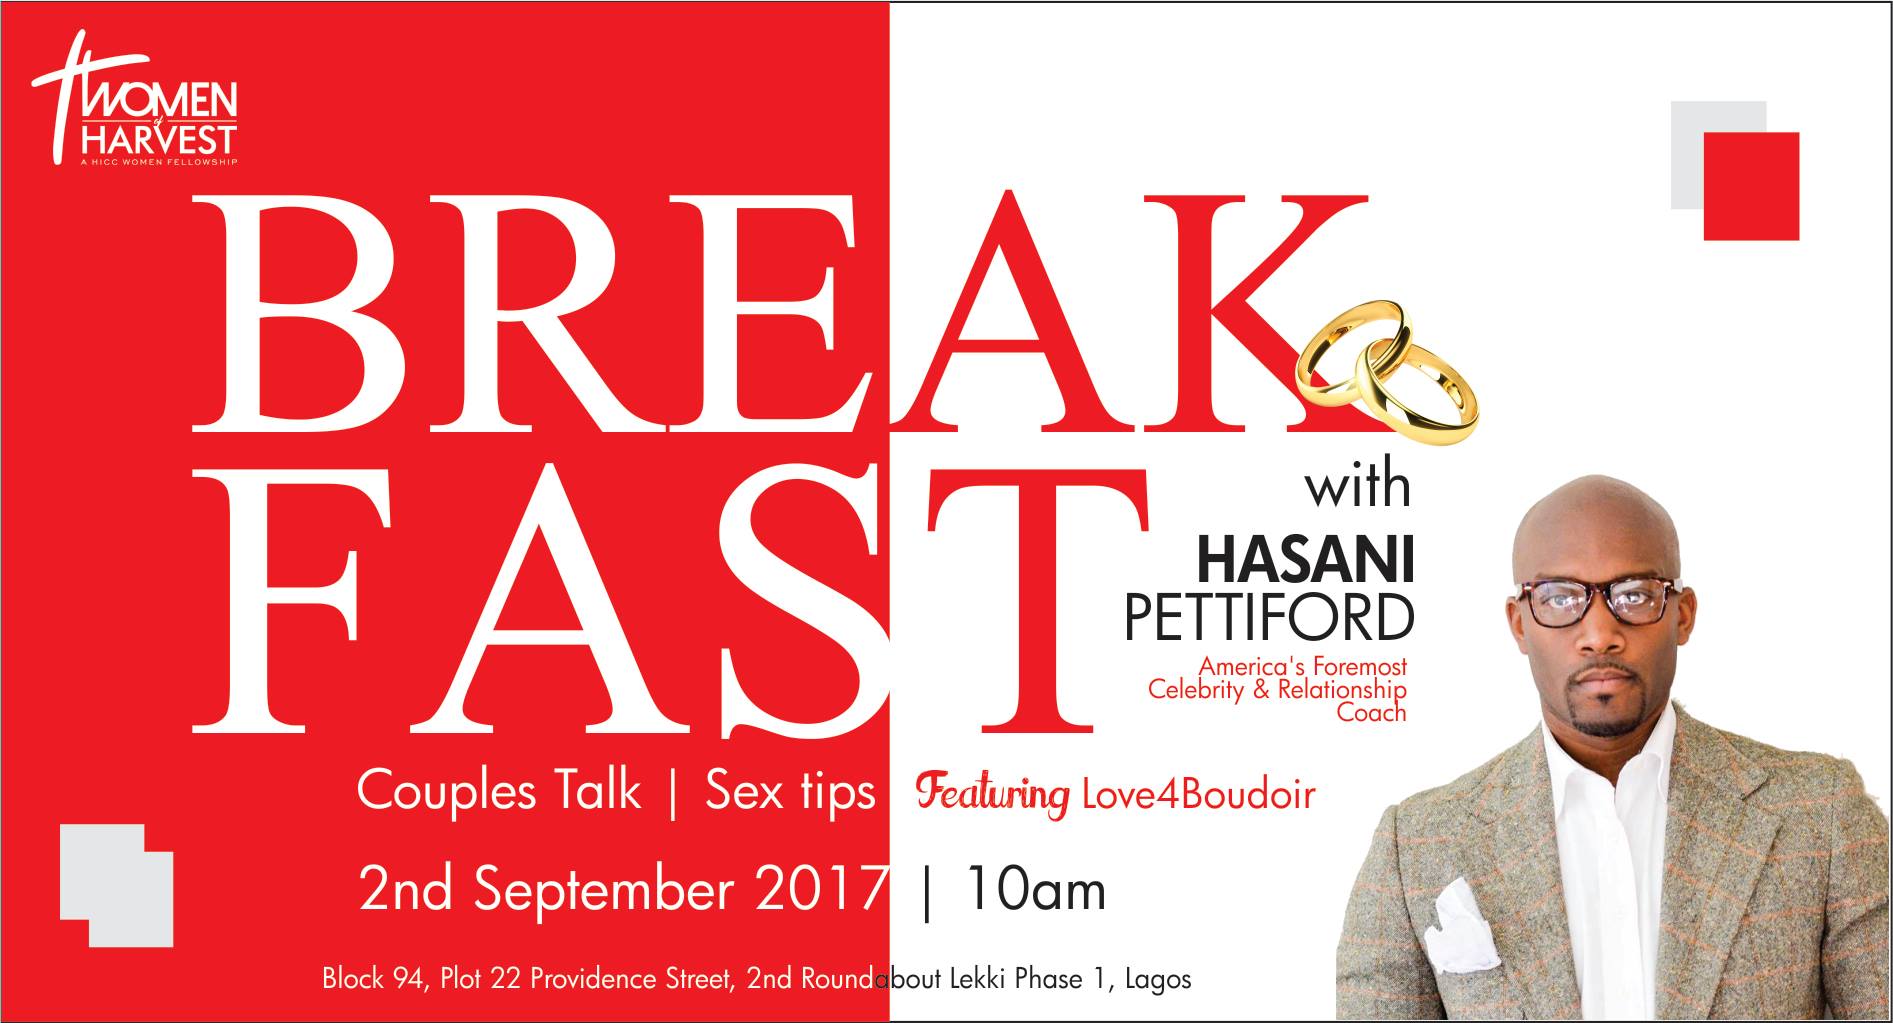 Breakfast With Hasani Pettiford